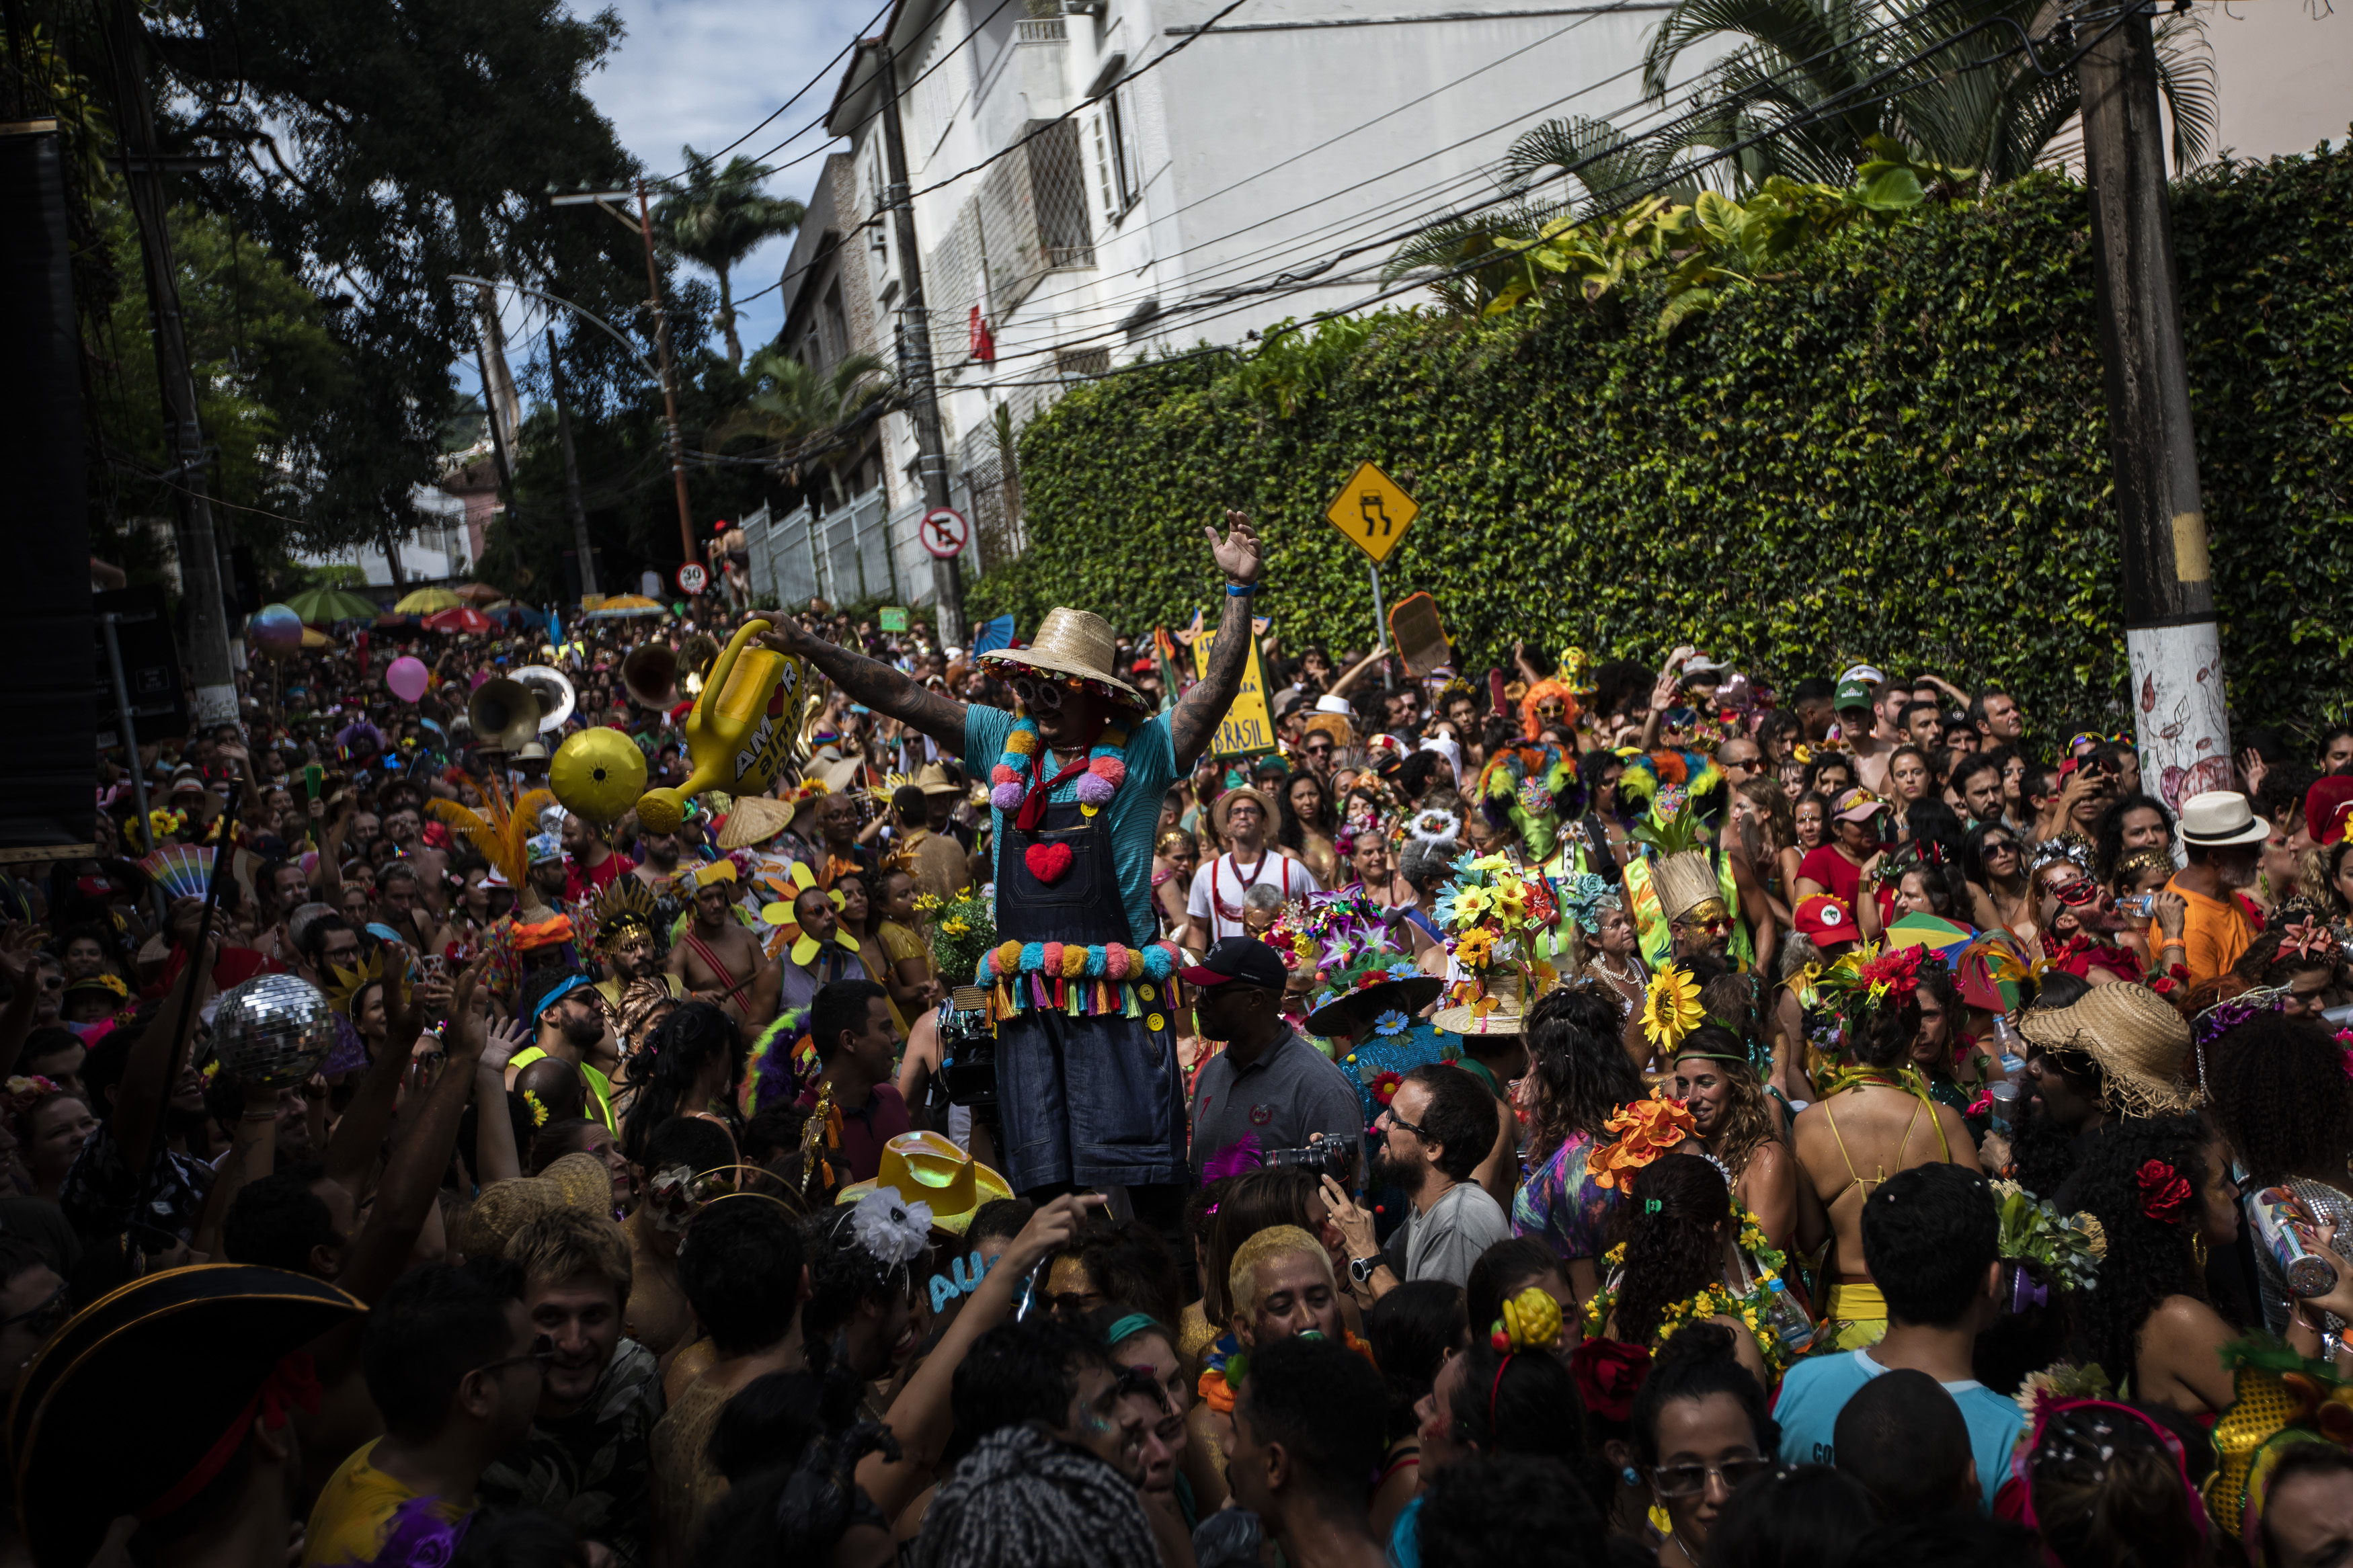 El bloco "Ceu na Terra" en Río de Janeiro, el pasado sábado 11 de febrero, durante los desfiles callejeros pre-carnaval (Foto: AP/Bruna Prado)